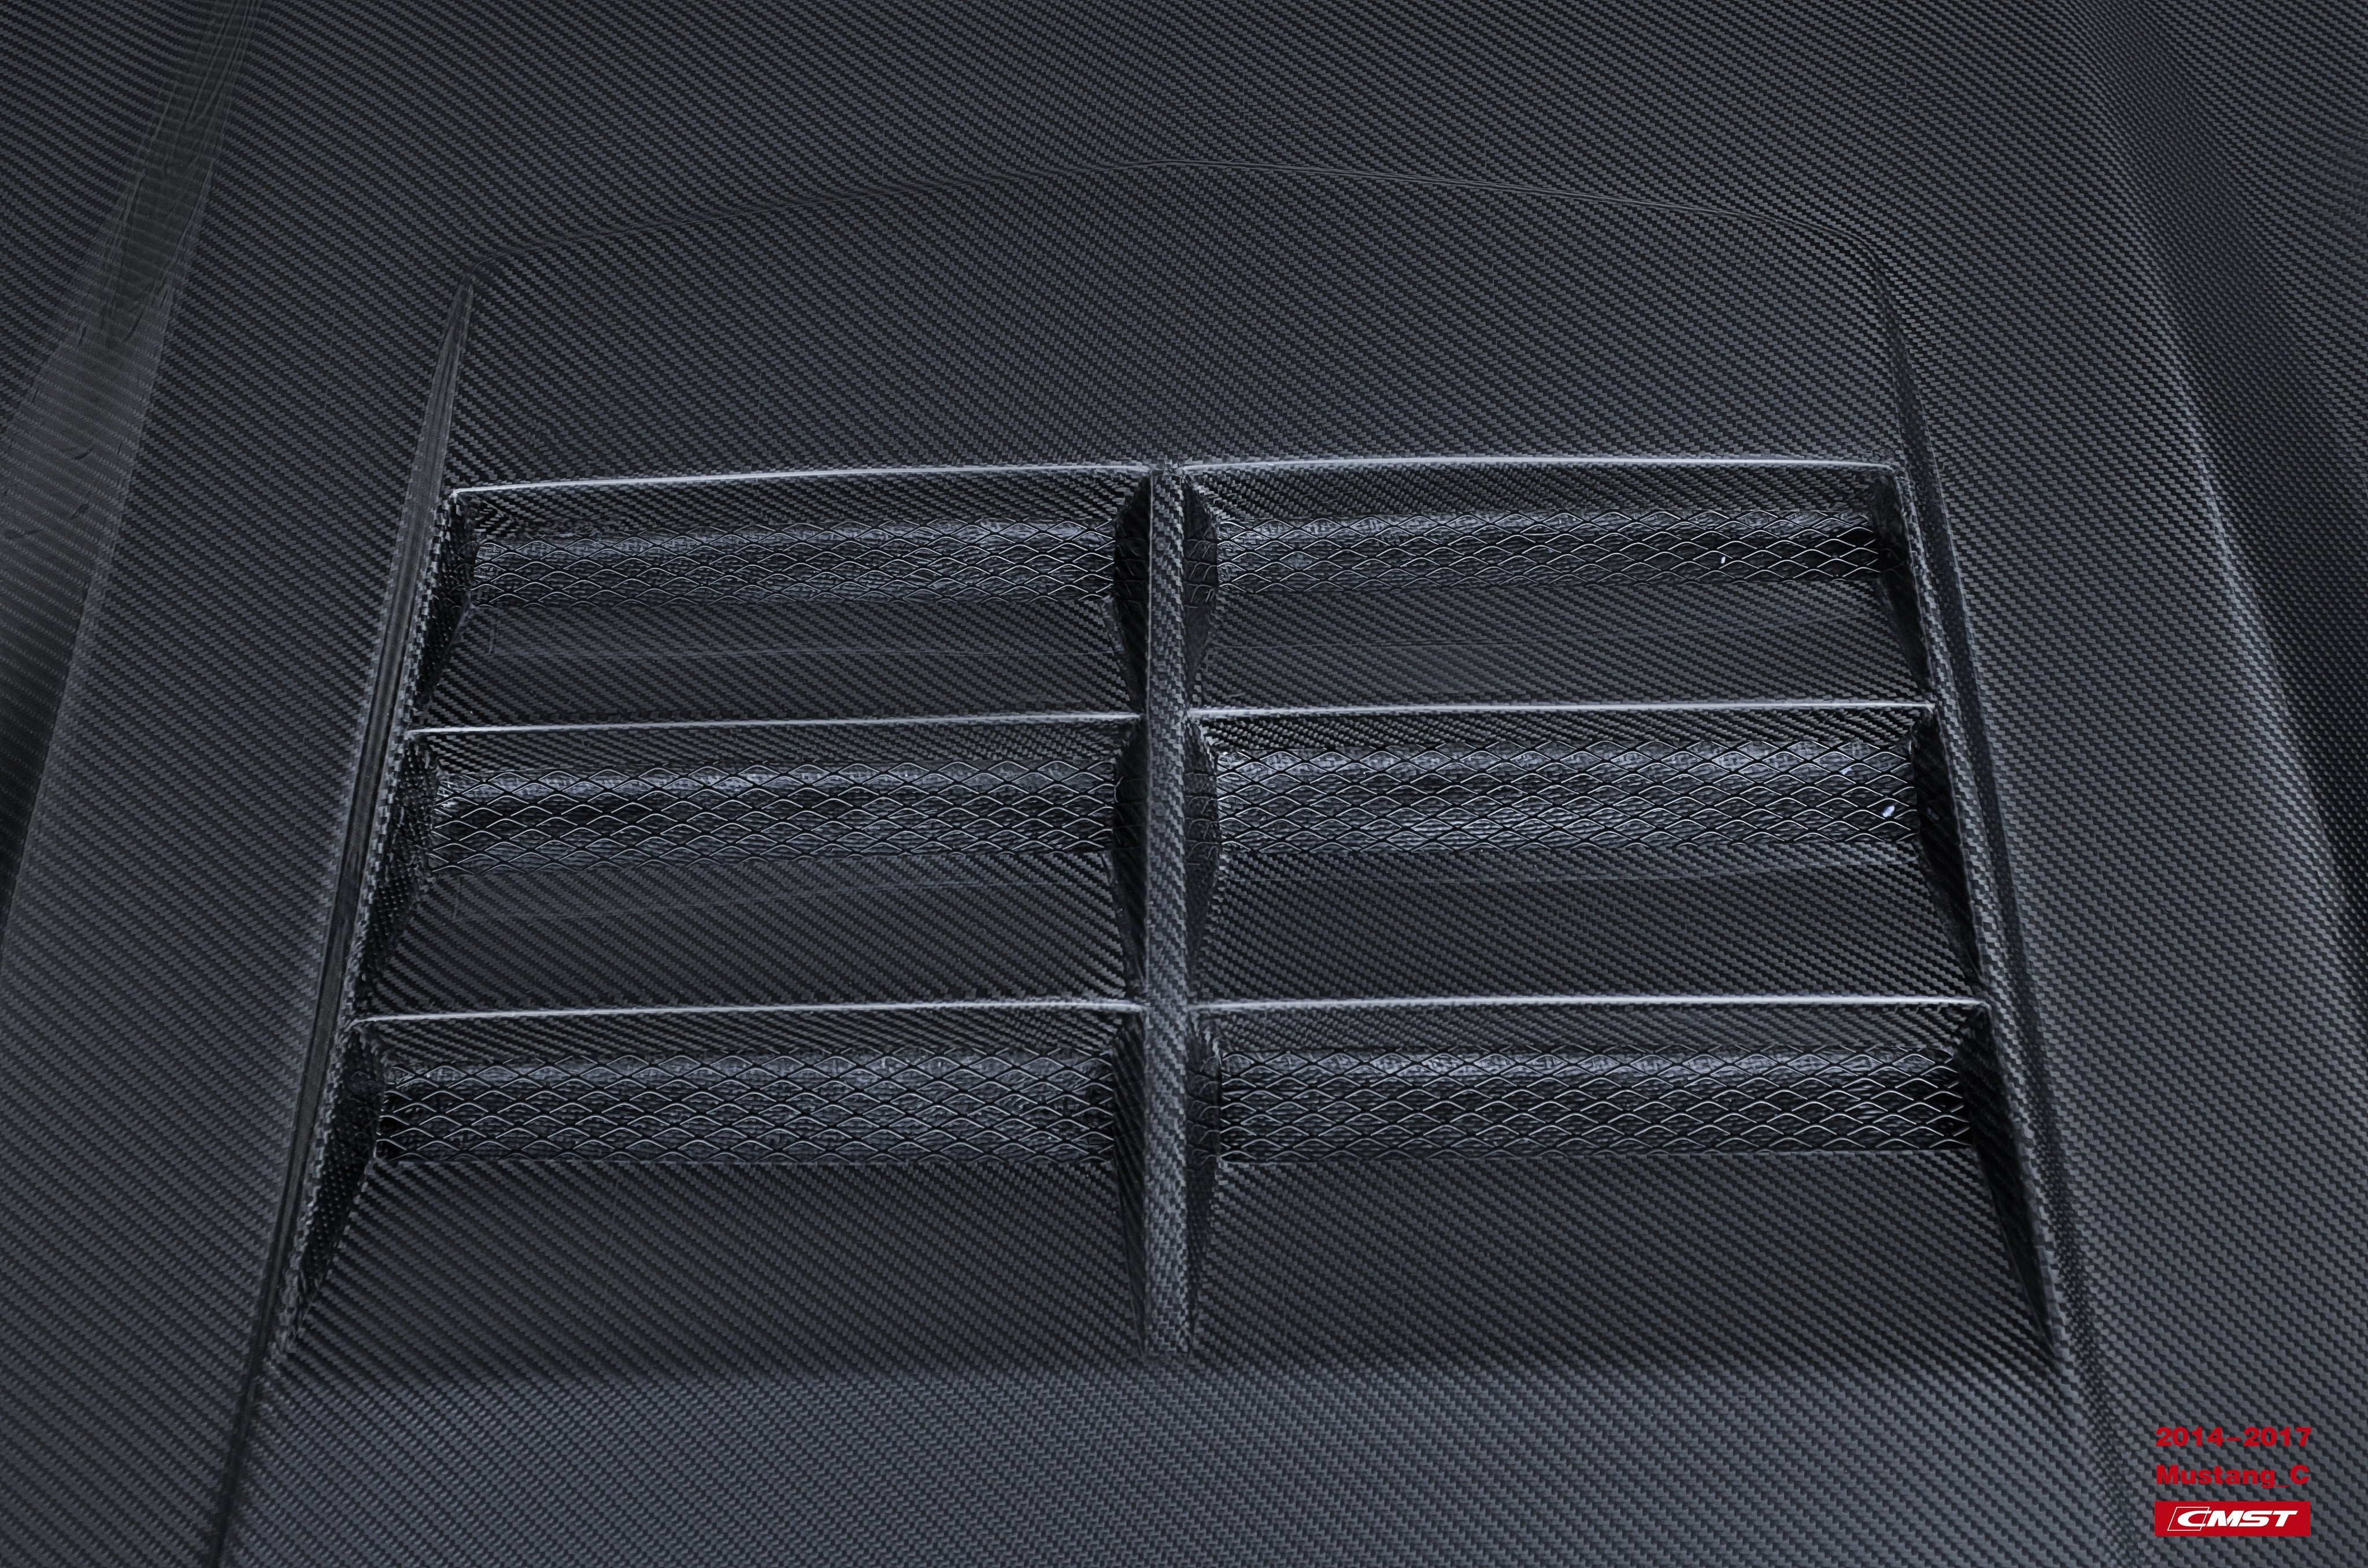 CMST Carbon Fiber Hood Ver.3 for Ford Mustang S550.1 2015-2017